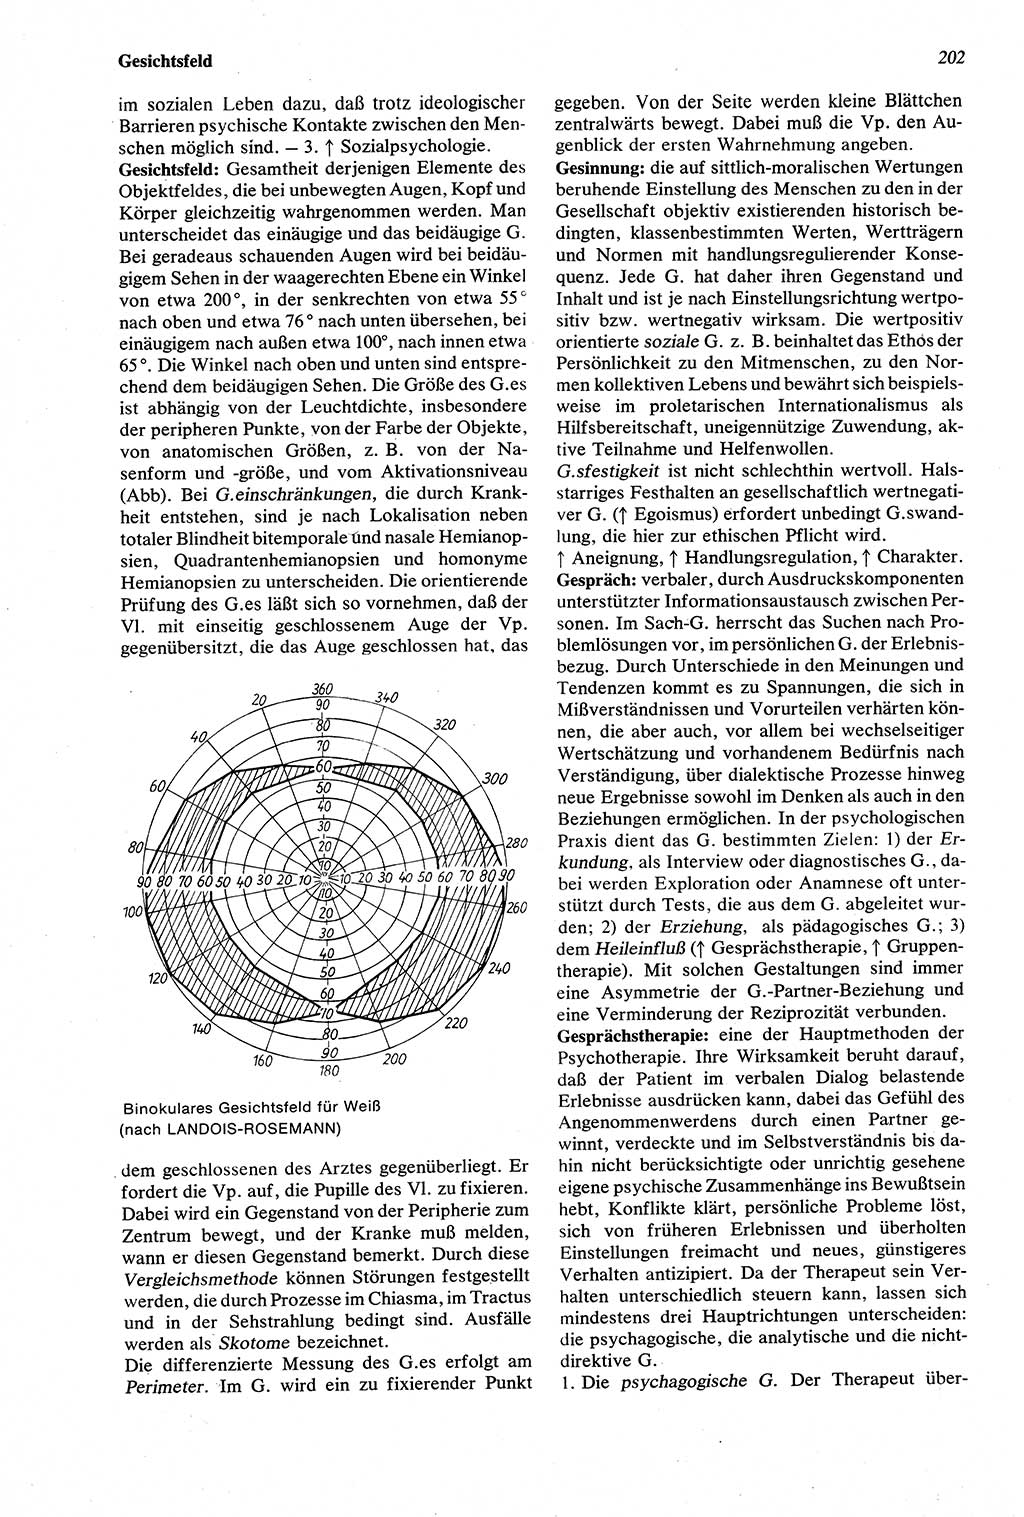 Wörterbuch der Psychologie [Deutsche Demokratische Republik (DDR)] 1976, Seite 202 (Wb. Psych. DDR 1976, S. 202)